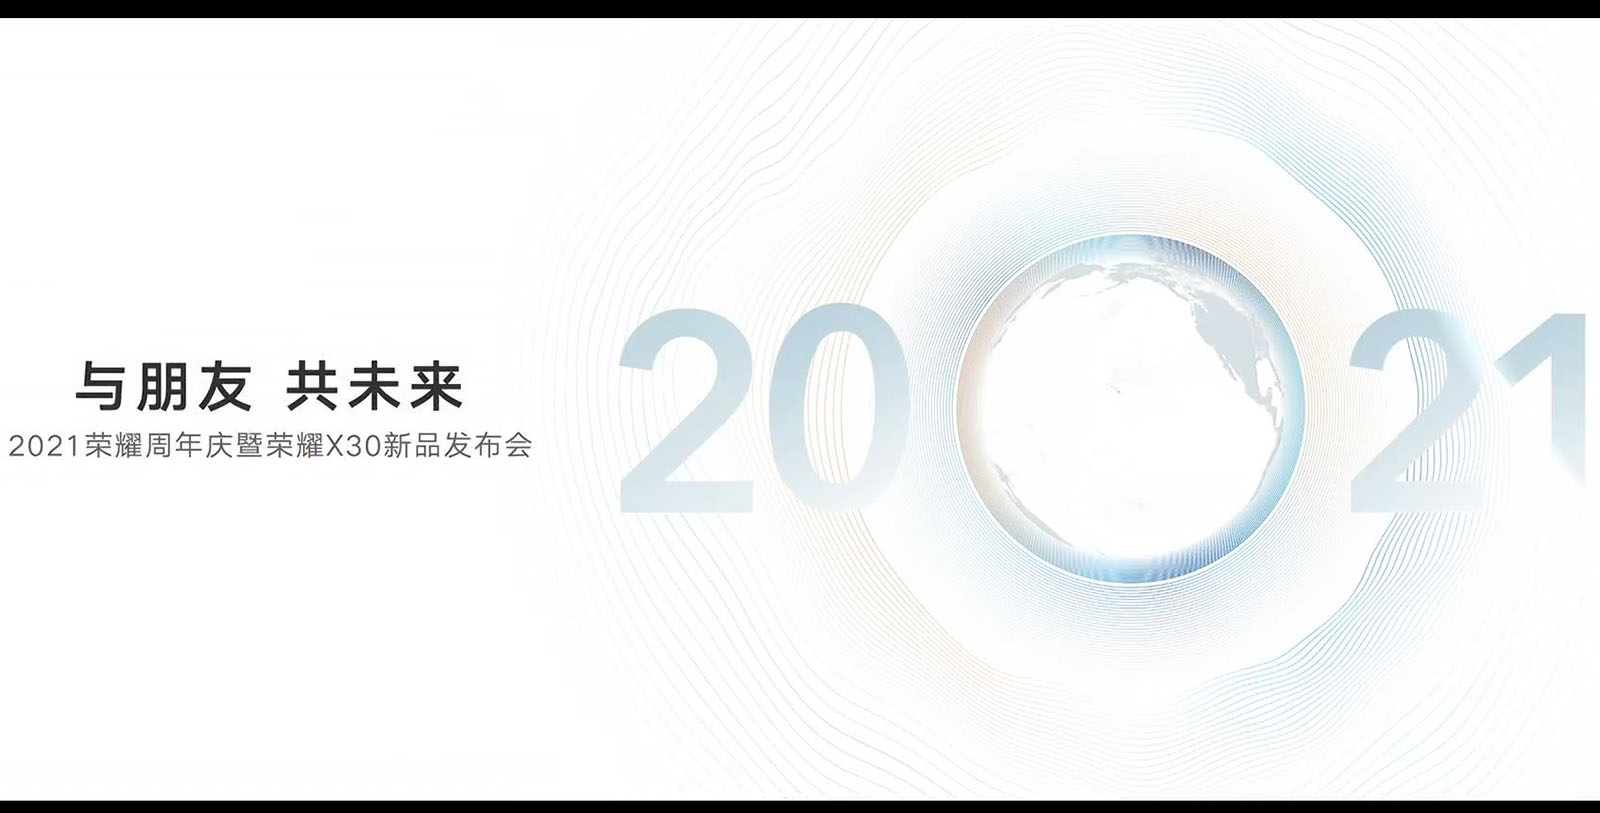 榮耀周年慶暨榮耀X30發布會 另有天璣9000首發